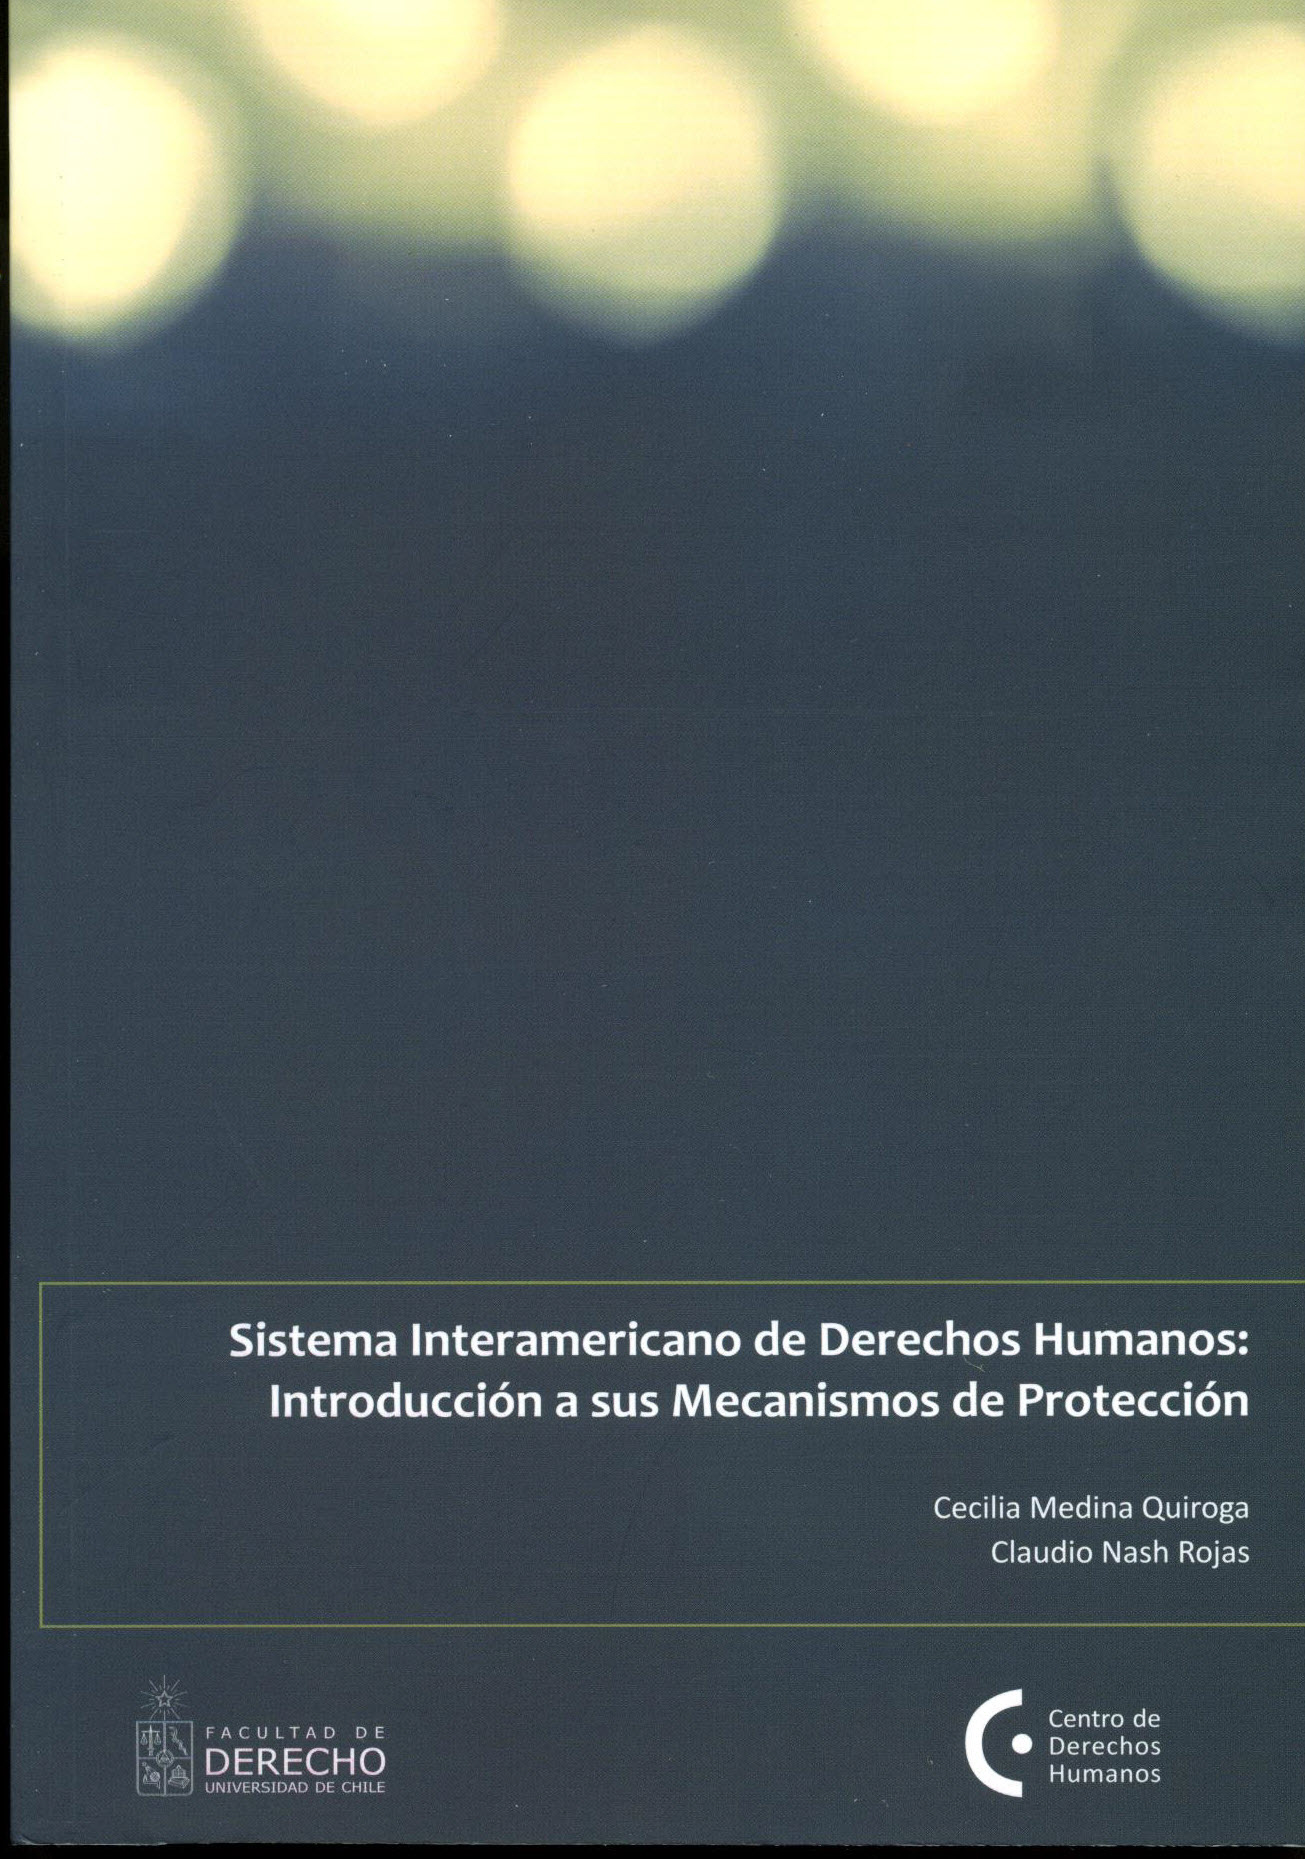 Sistema interamericano de Derechos Humanos: Introducción a sus mecanismos de protección (2011)